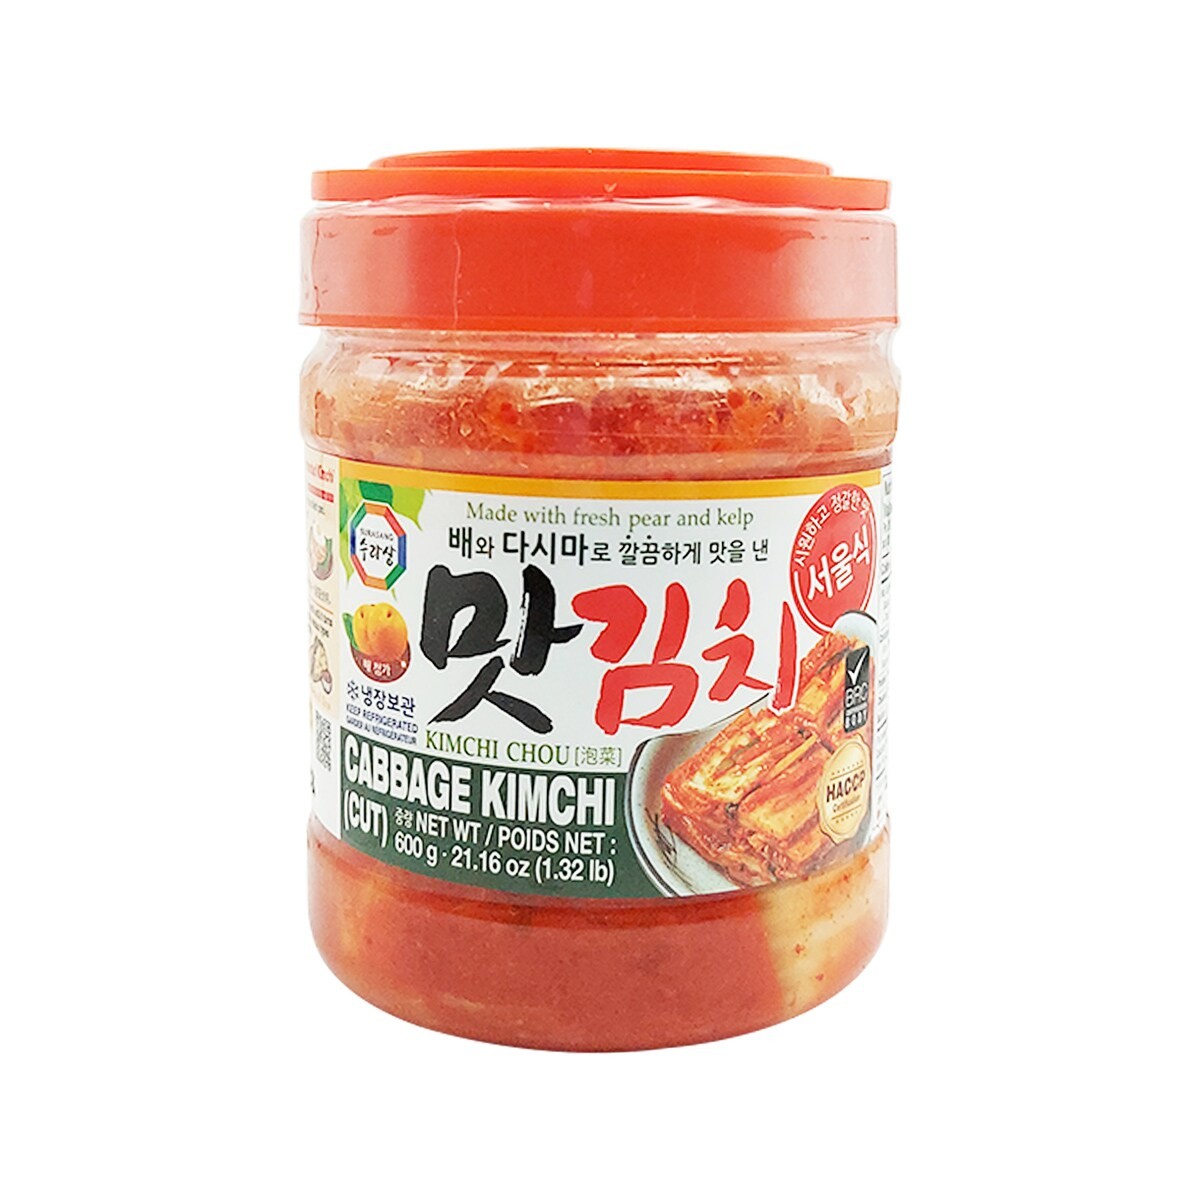 surasang-cabbage-kimchi